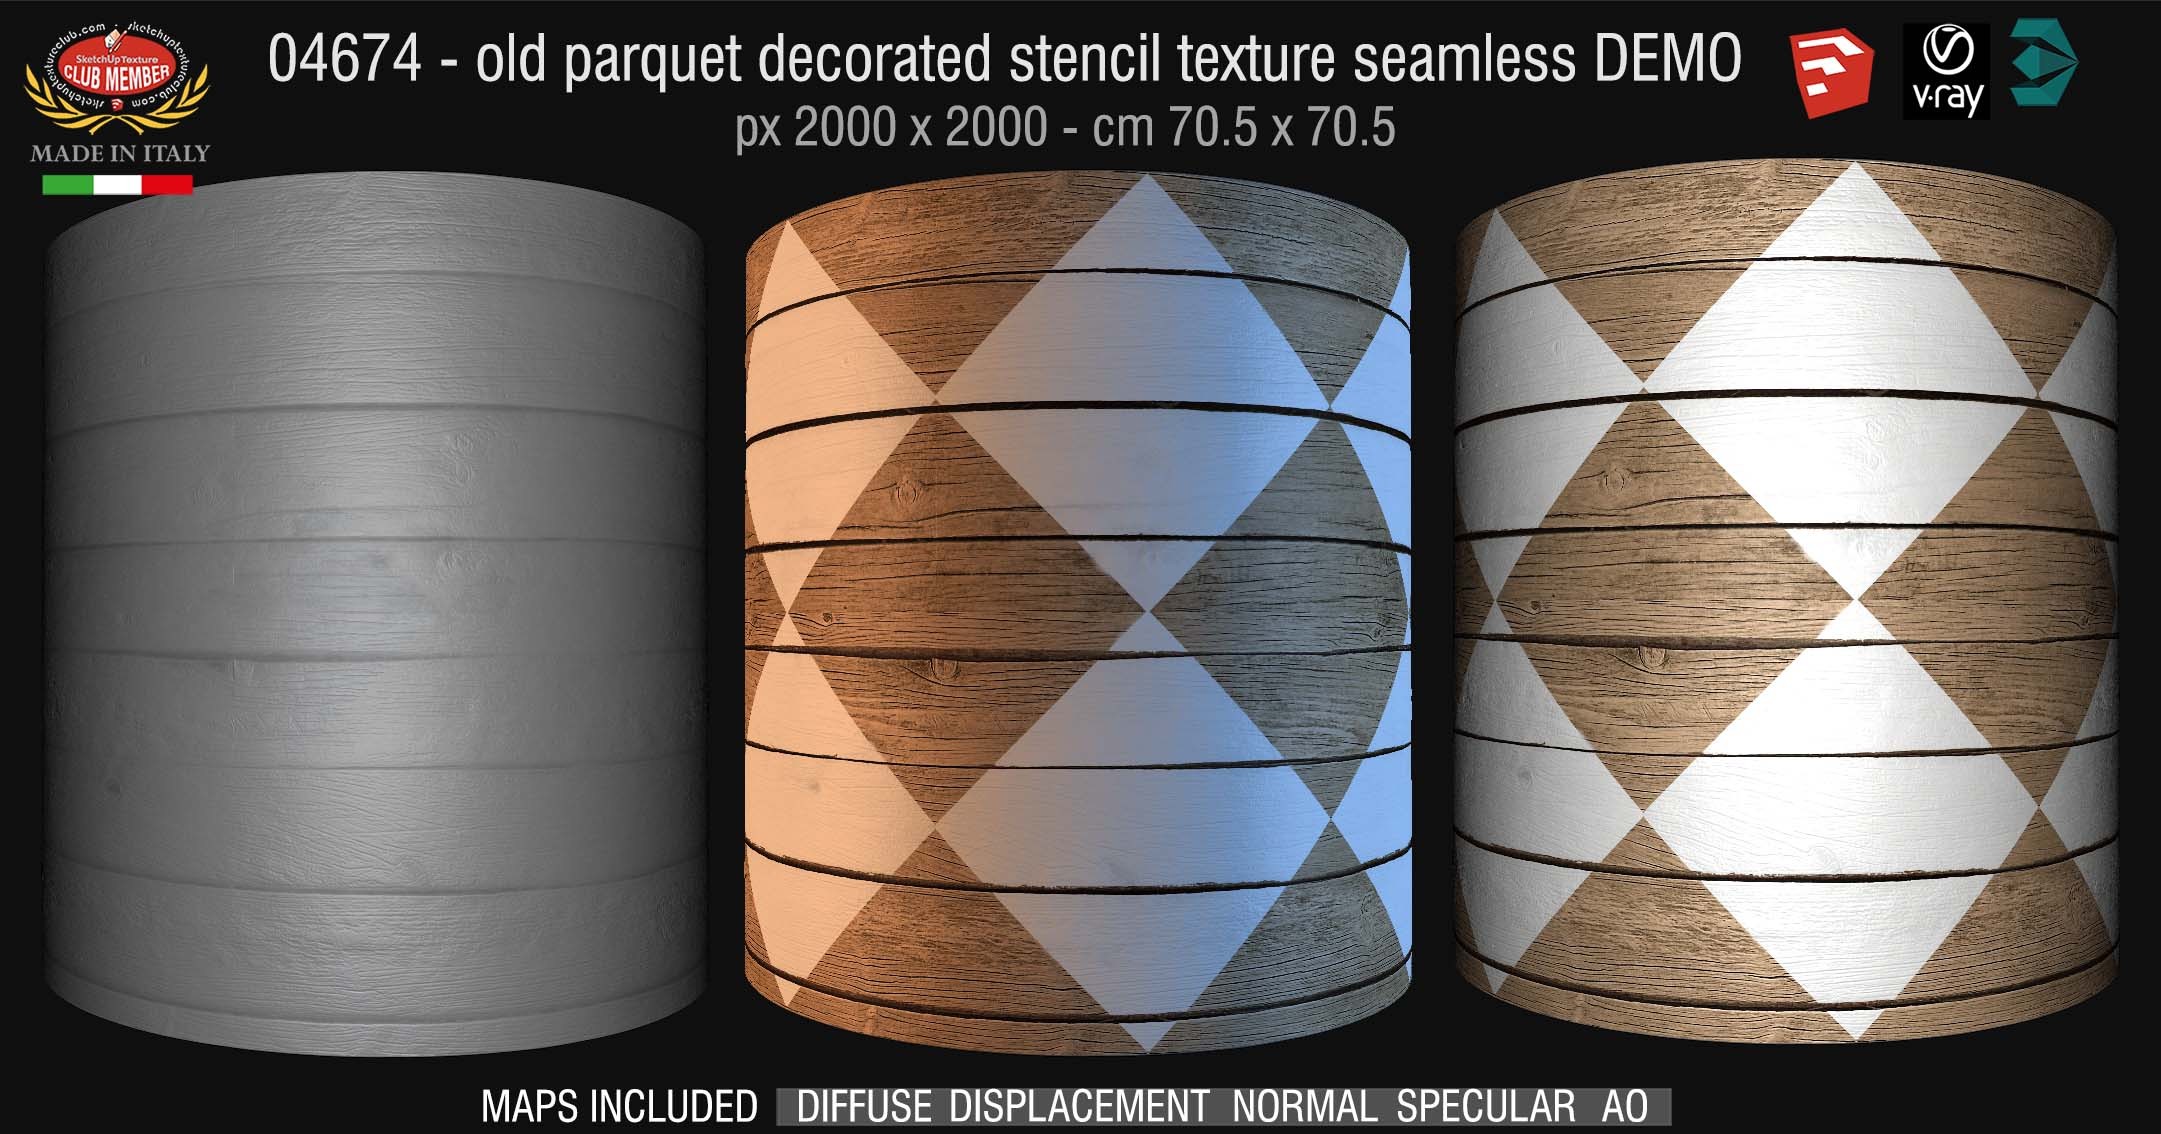 04674 HR Parquet decorated stencil texture seamless + maps DEMO